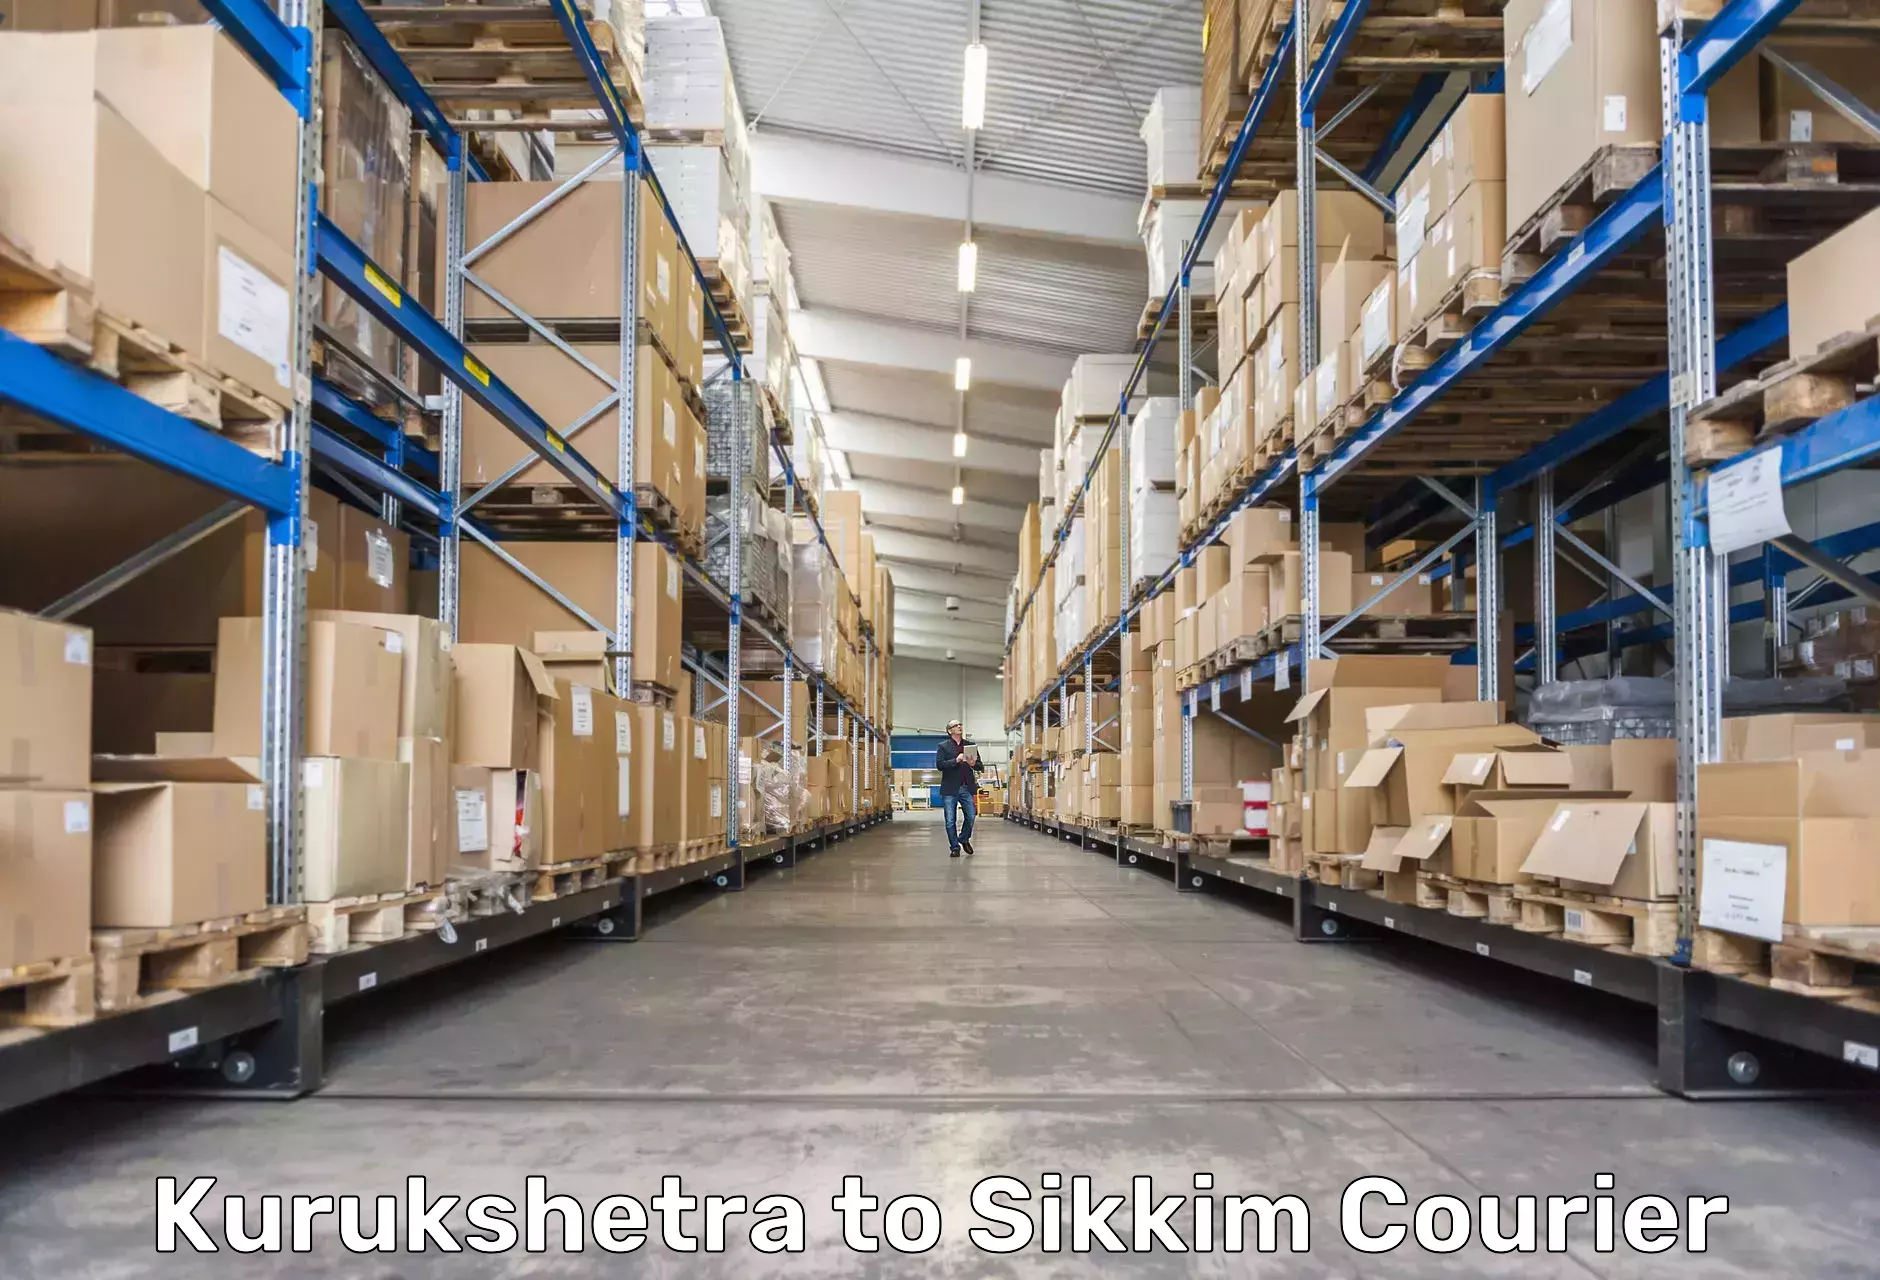 Bulk shipping discounts in Kurukshetra to Pelling